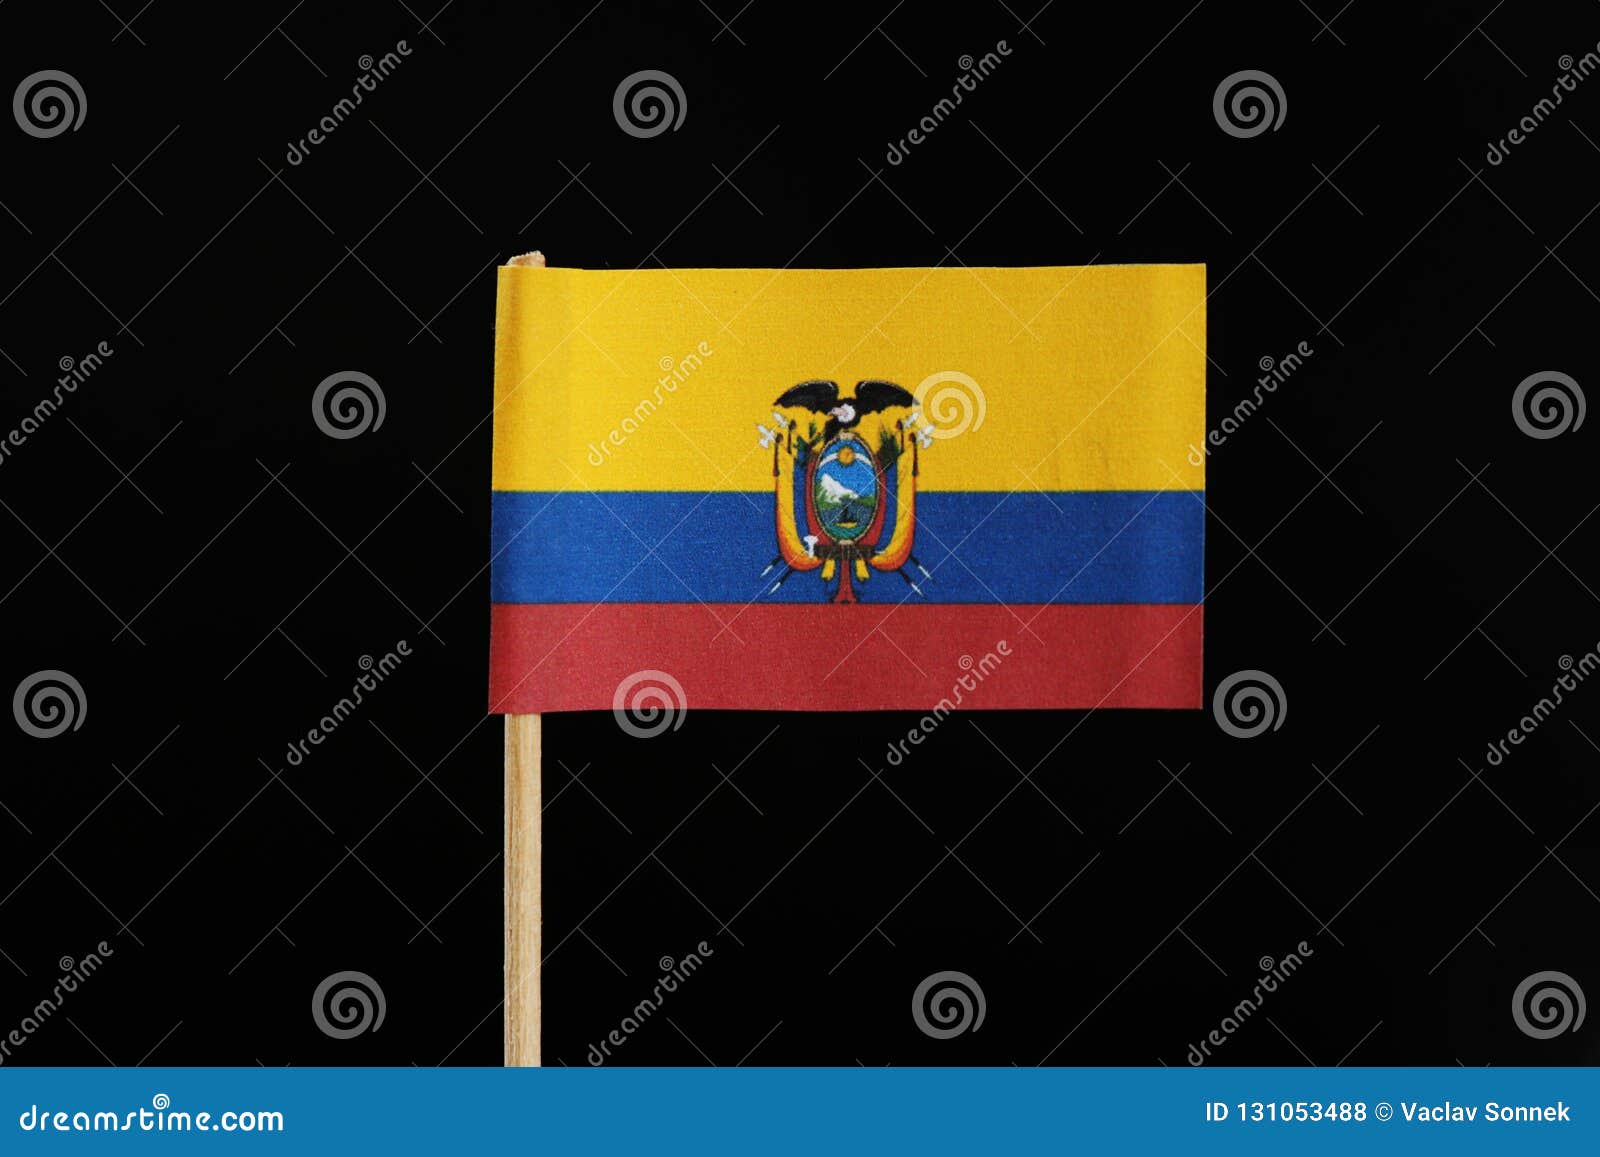 Bandera amarillo azul y rojo con escudo